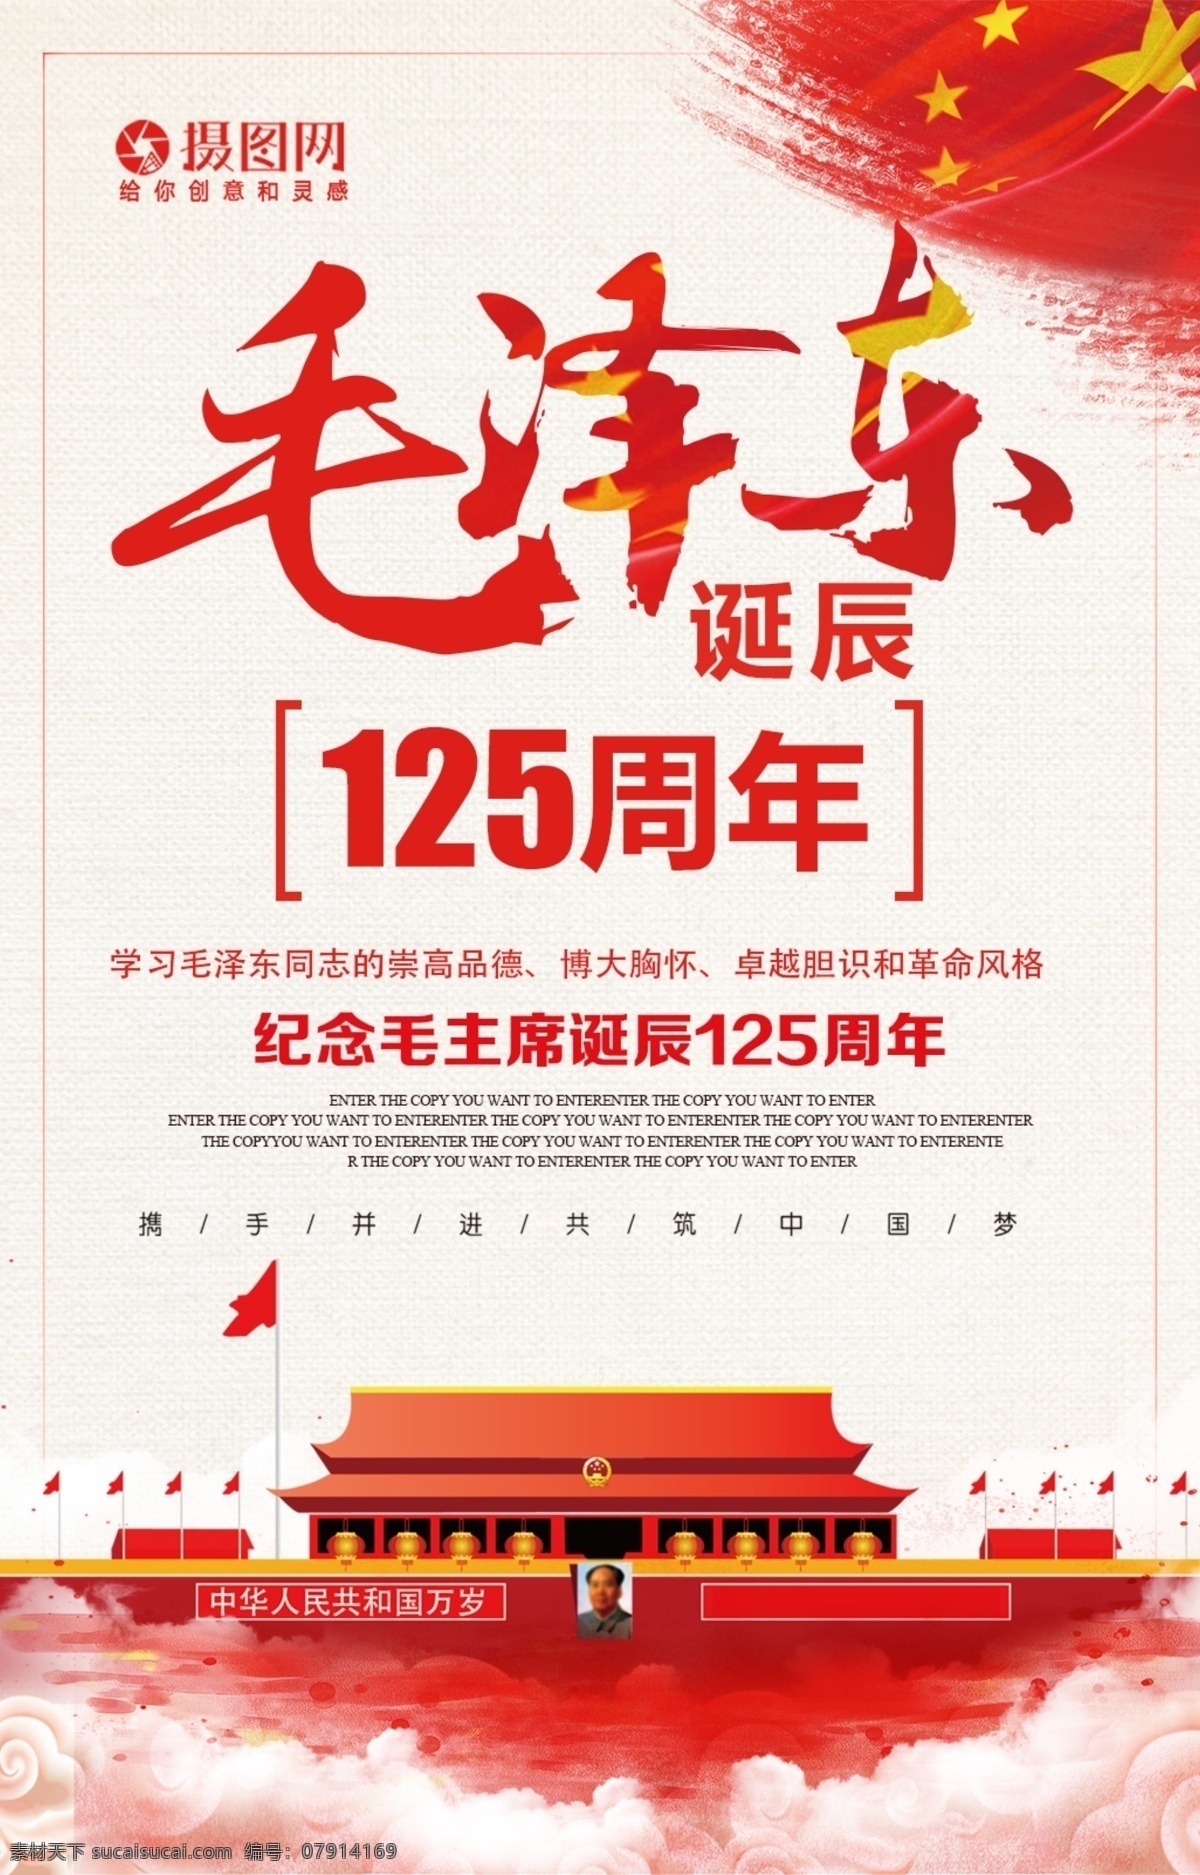 毛泽东 诞辰 周年 海报 125周年 同志怀念 毛主席 毛泽东诞辰 海报纪念 纪念日 缅怀 领袖纪念 主席诞辰